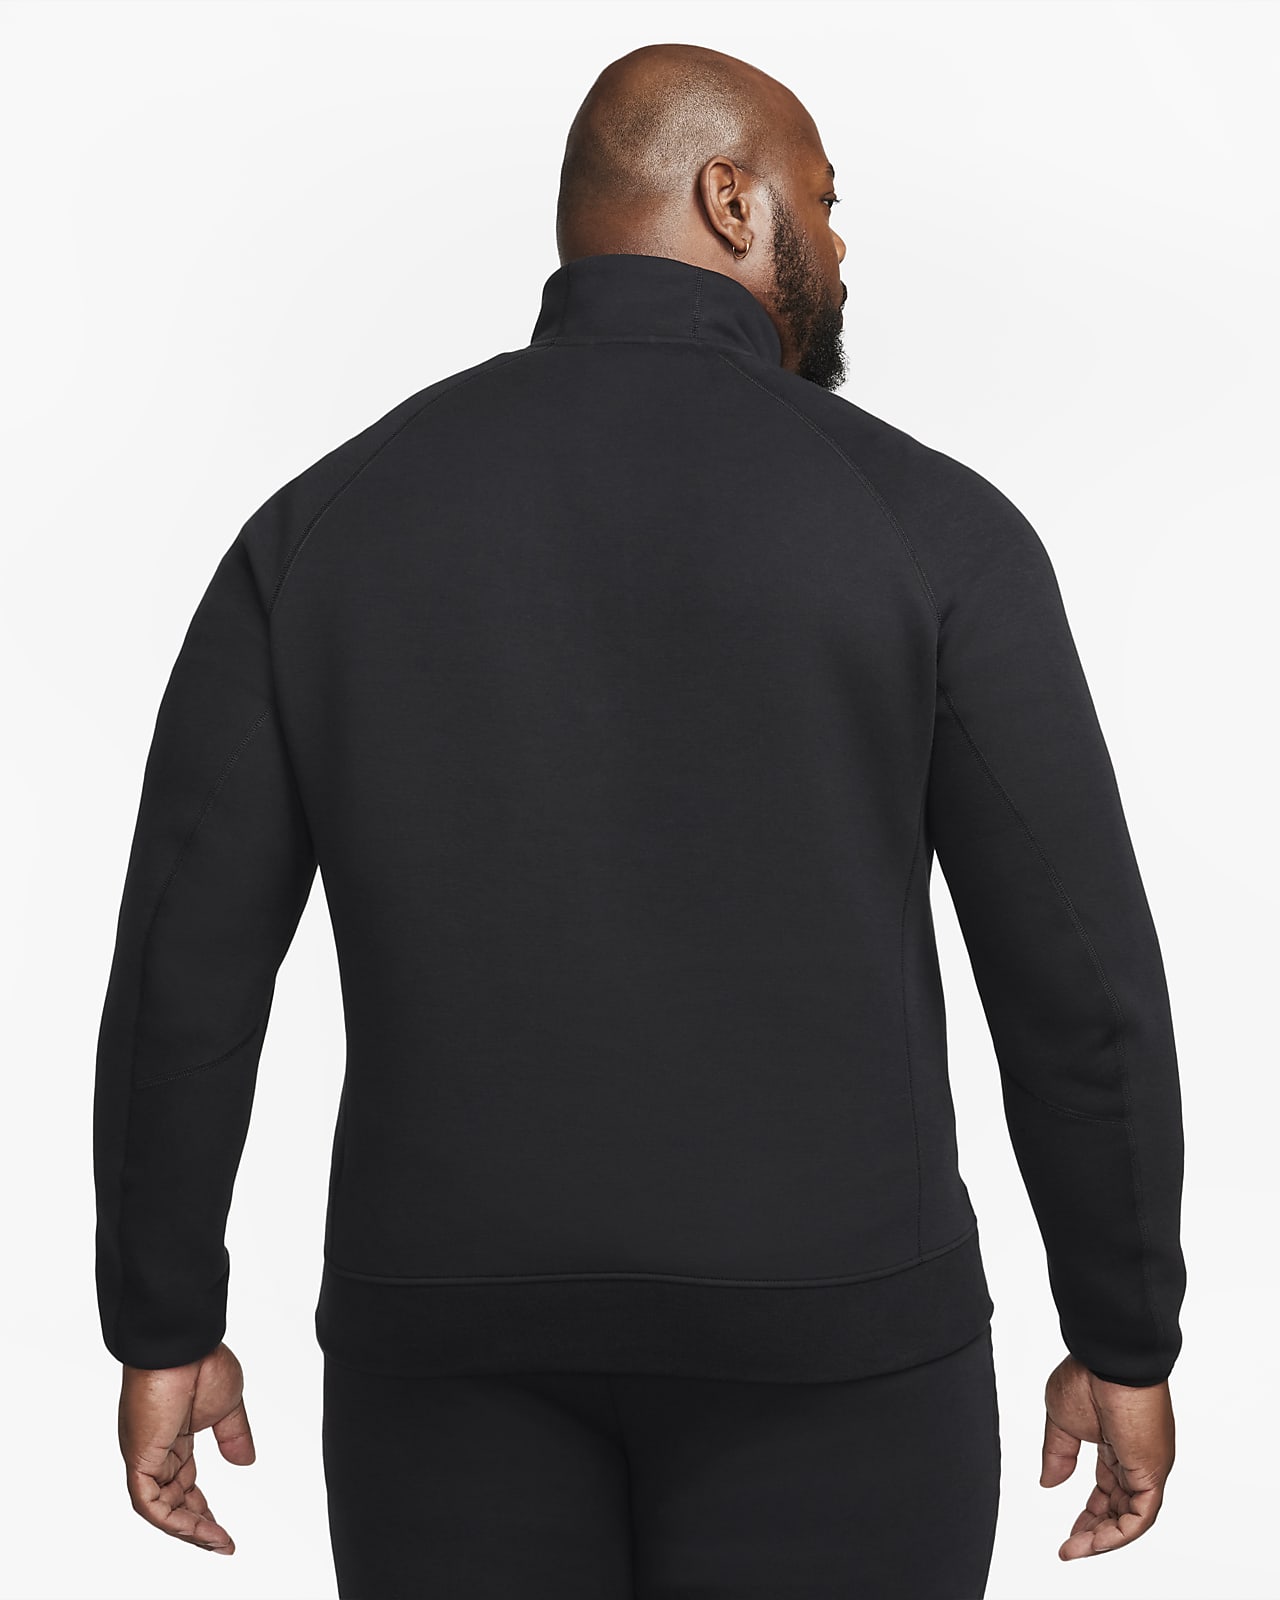 Nike Sportswear Tech Fleece Men's 1/2-Zip Sweatshirt M - Medium